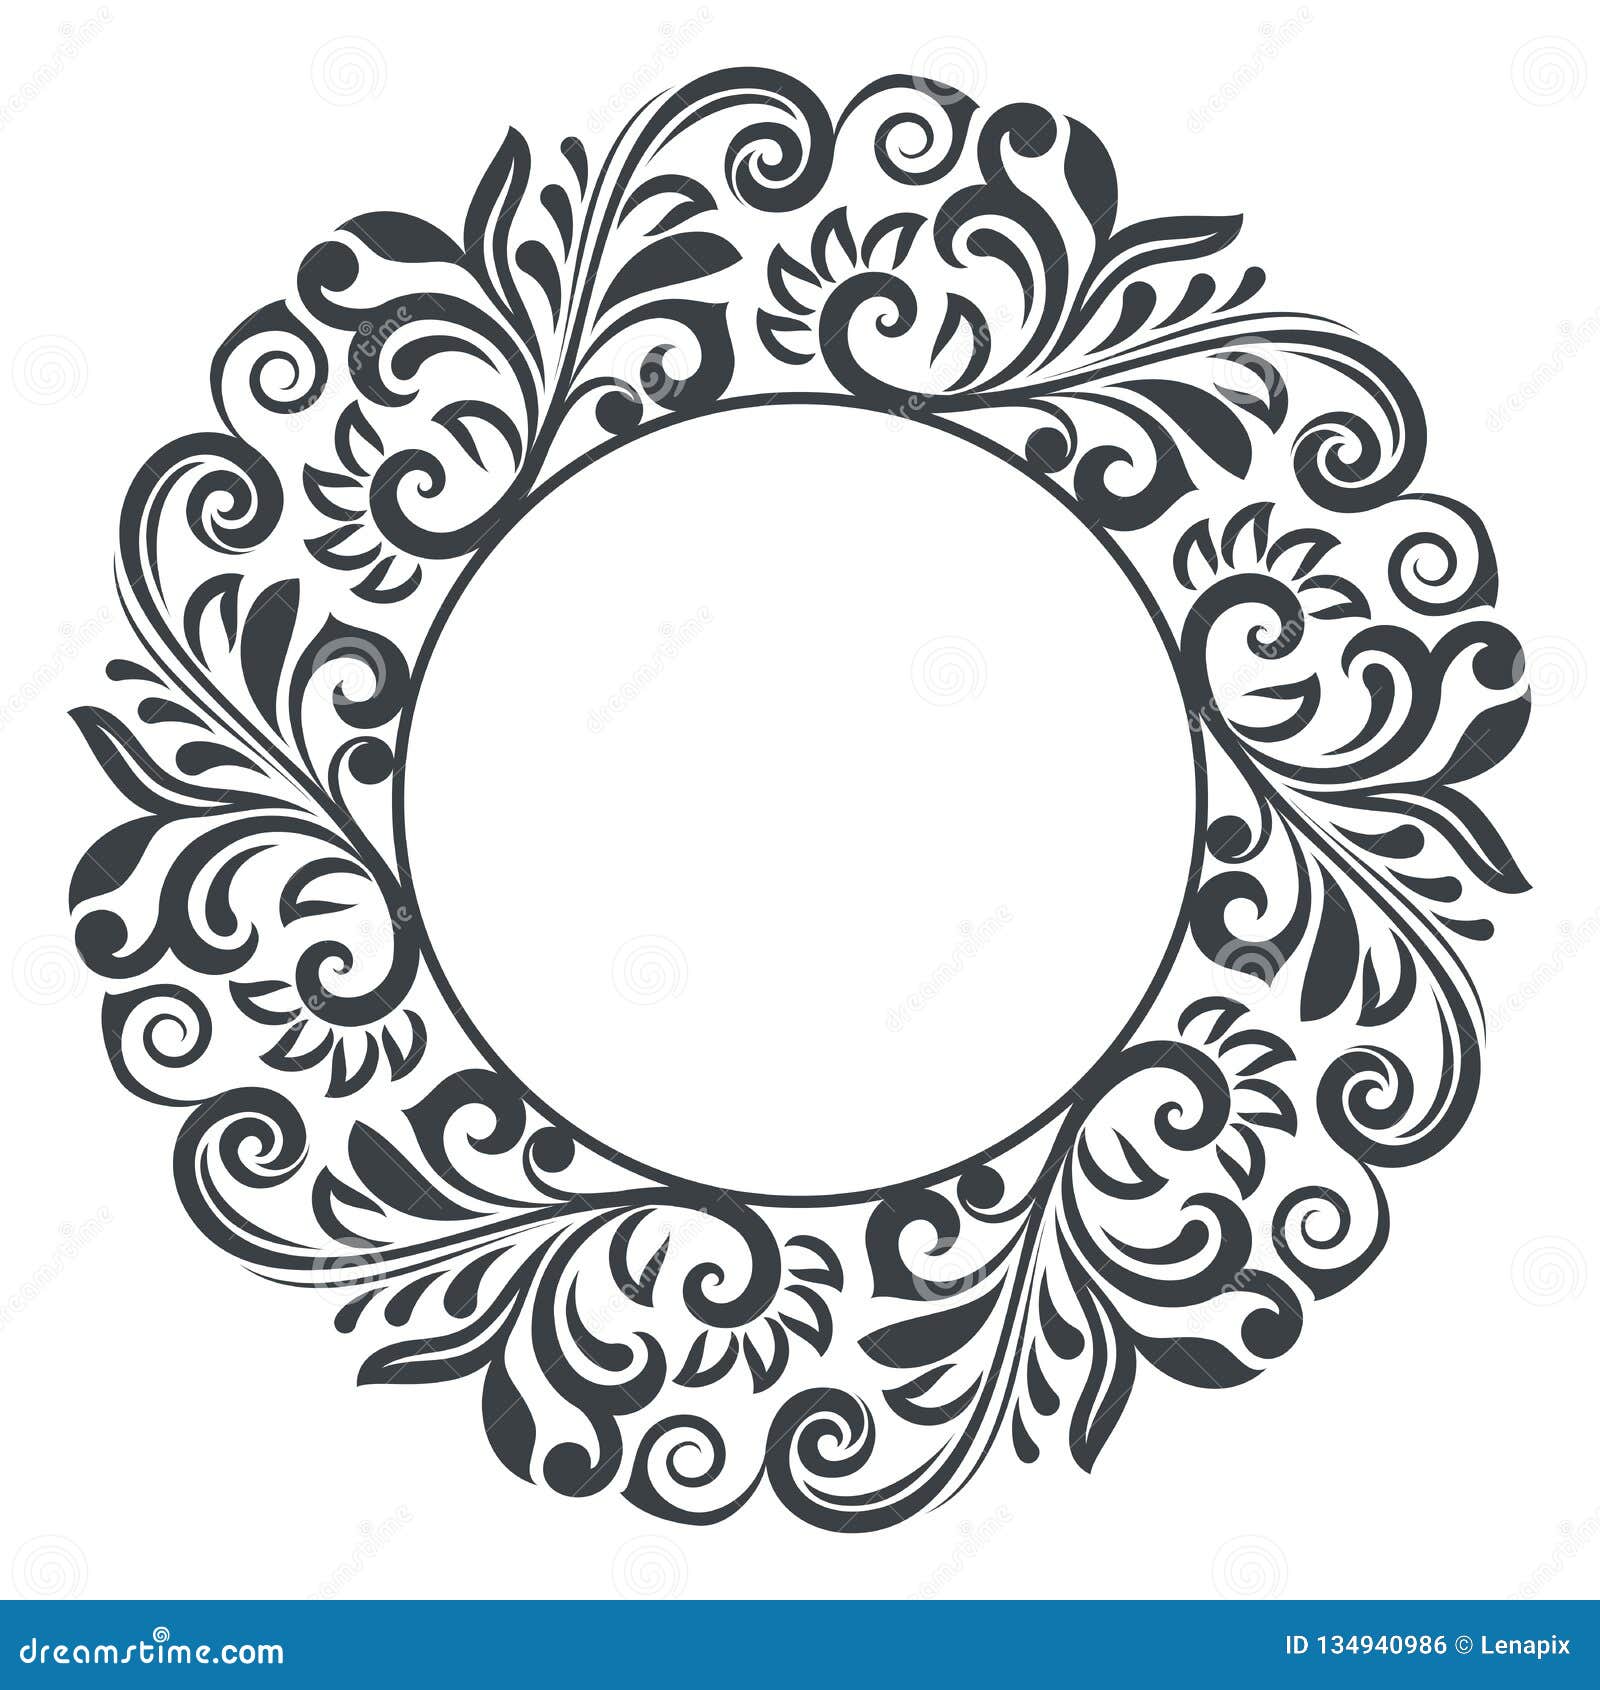 Khung hoa tròn đen trắng: Sự kết hợp hoàn hảo giữa khung hoa tròn đen trắng sẽ đem lại cho bạn cảm giác hiện đại và sang trọng. Khung hoa trang trí cho hình ảnh của bạn ngày càng lung linh và nổi bật hơn bao giờ hết.